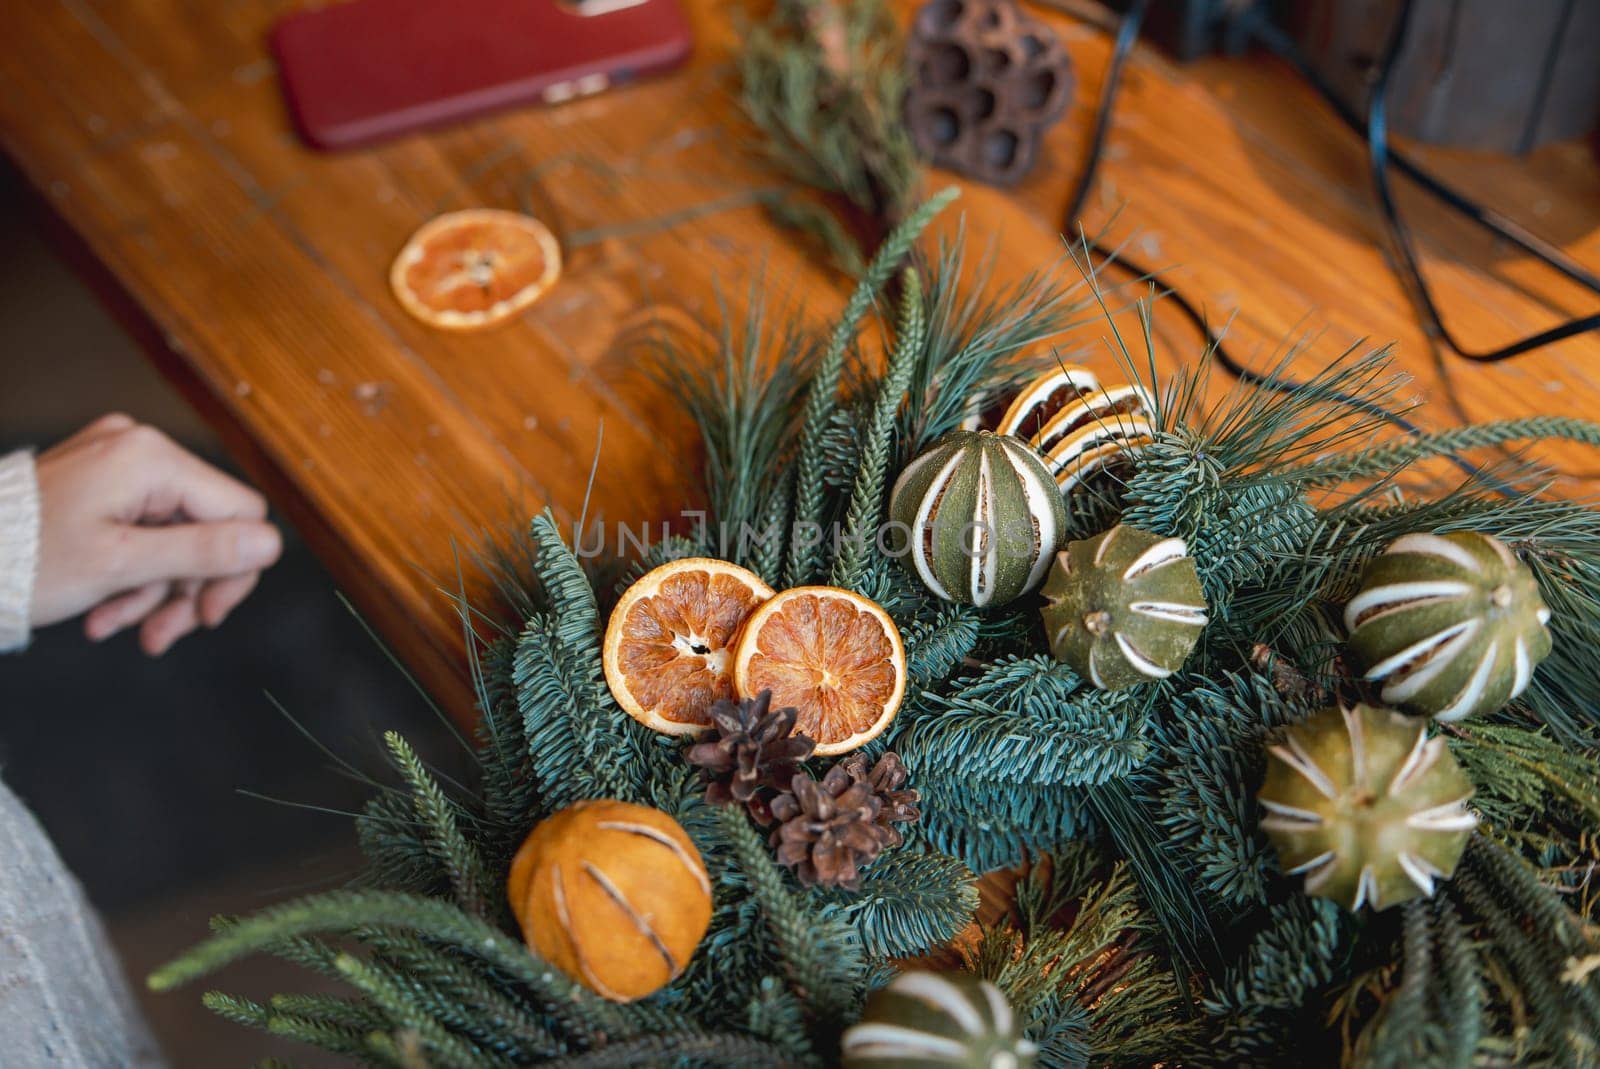 Workshop on designing holiday wreaths and New Year's embellishments. by teksomolika